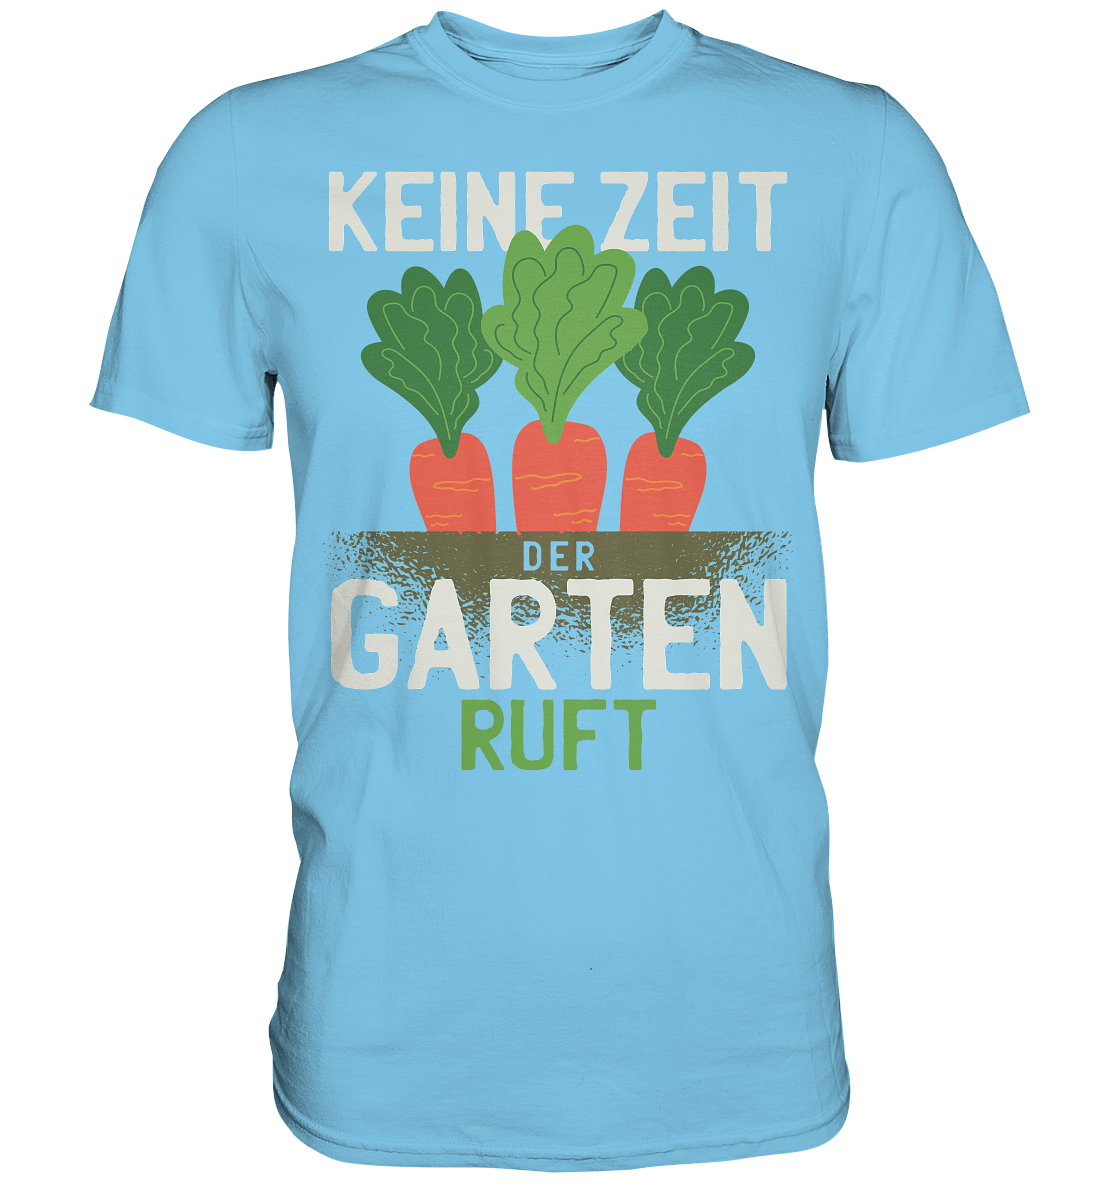 Keine Zeit der Garten ruft - Premium Shirt - Online Kaufhaus München